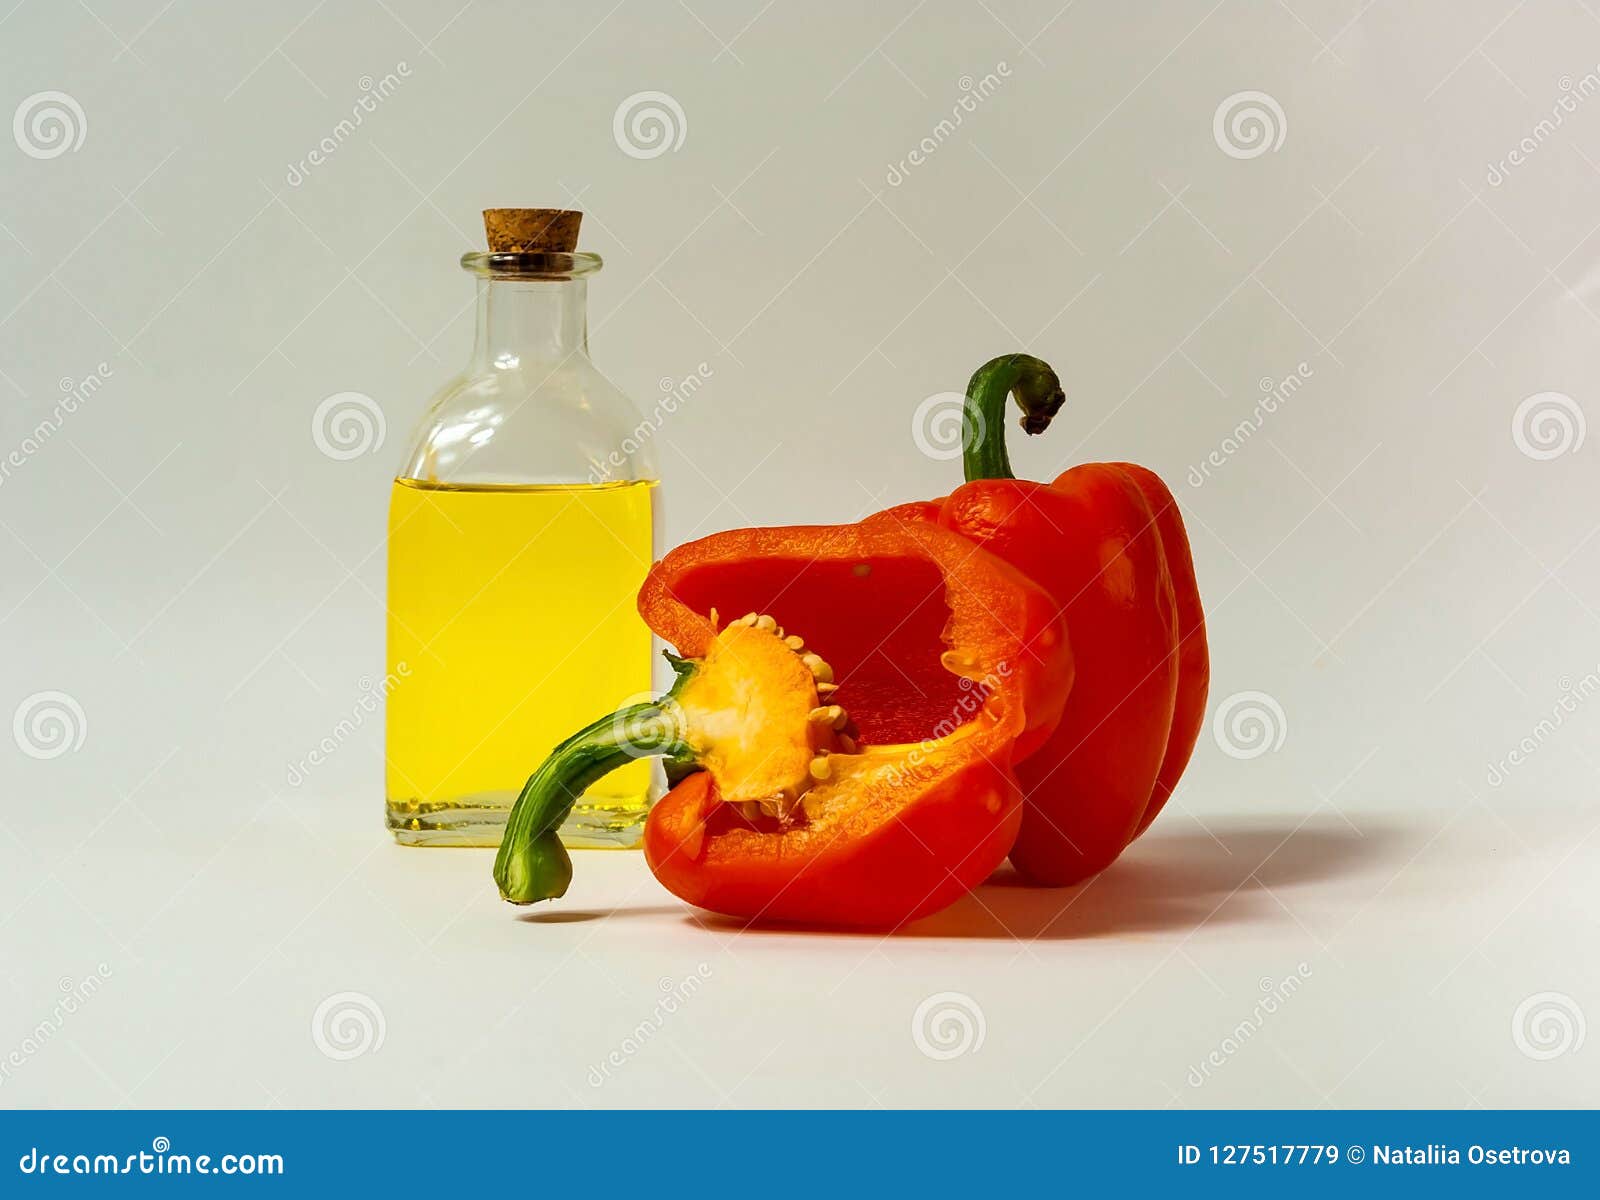 Pimienta y aceite de oliva frescos anaranjados en la botella de cristal en el fondo blanco El concepto de comida sabrosa y sana, espacio de la copia, primer